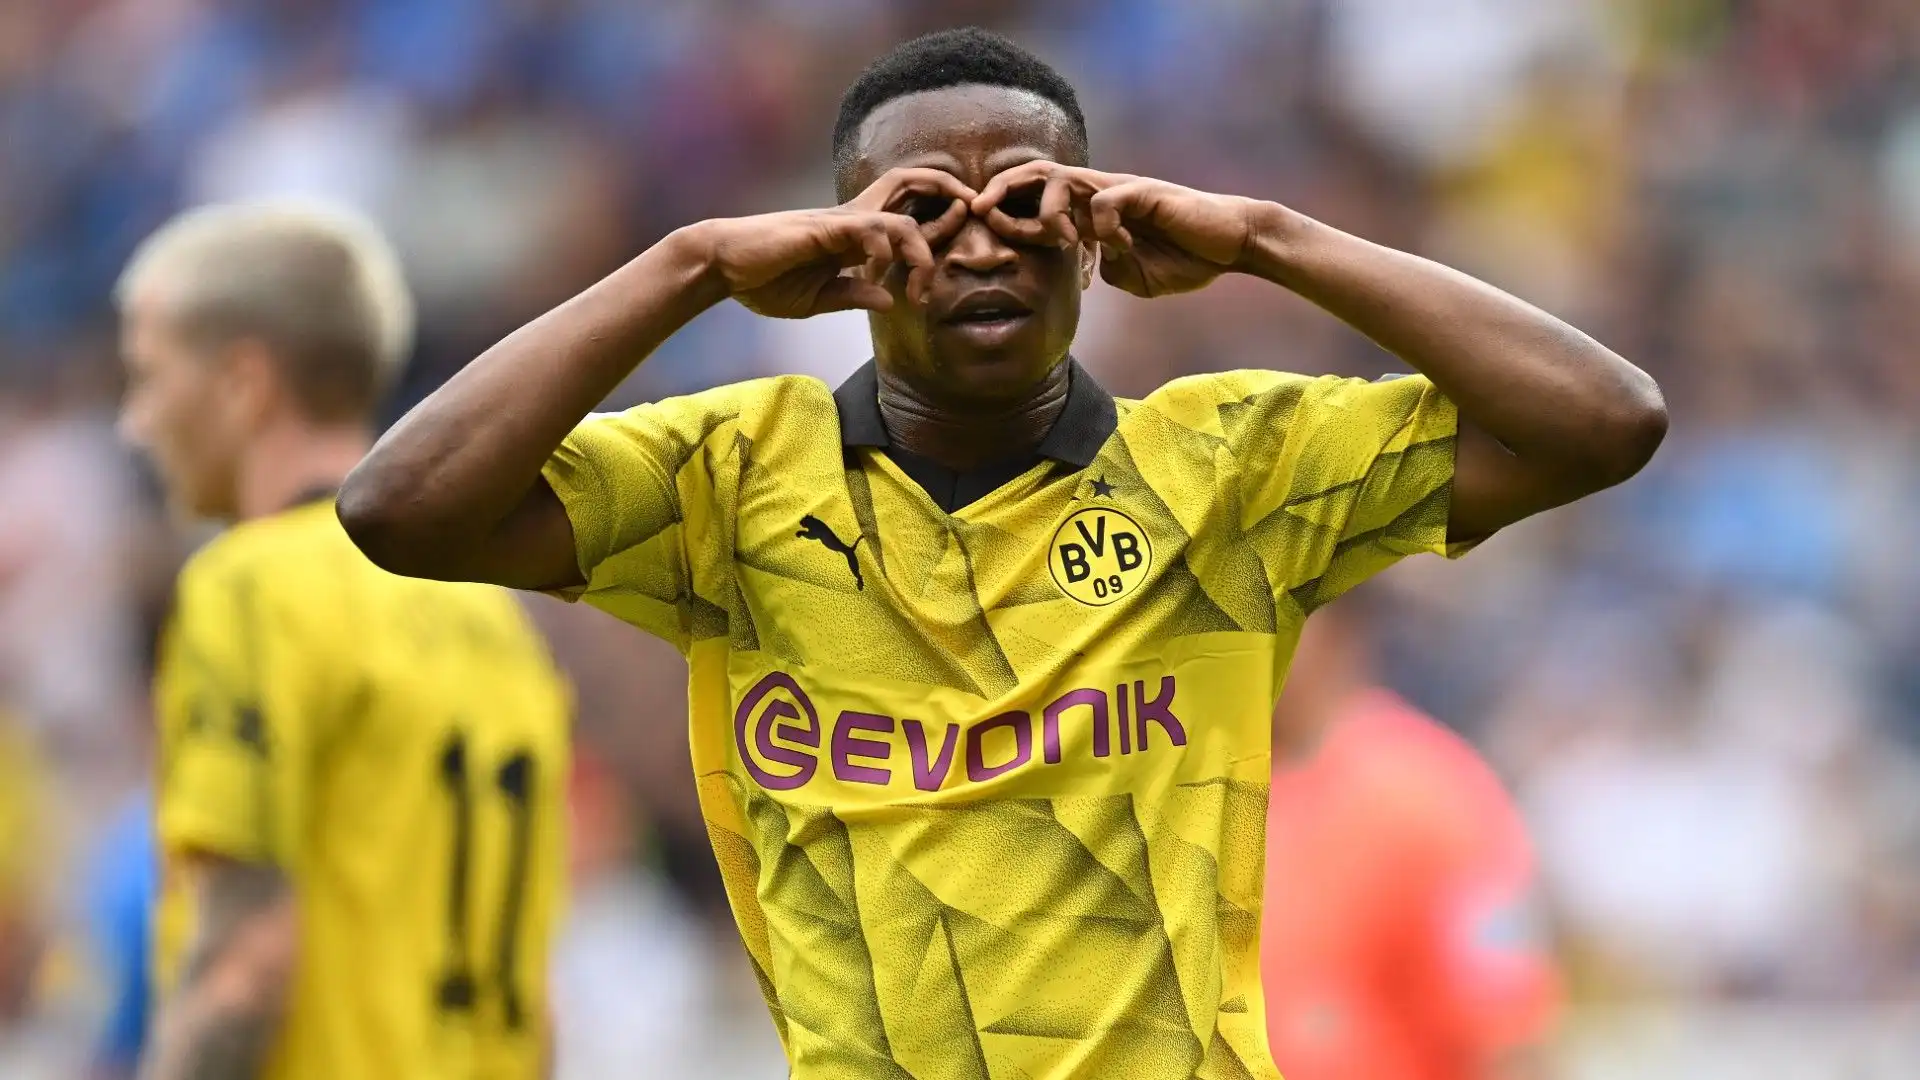 4- Solo 18 anni e già più di 80 partite giocate con il Dortmund: Youssoufa Moukoko è un prodigio. Vale 30 milioni di euro